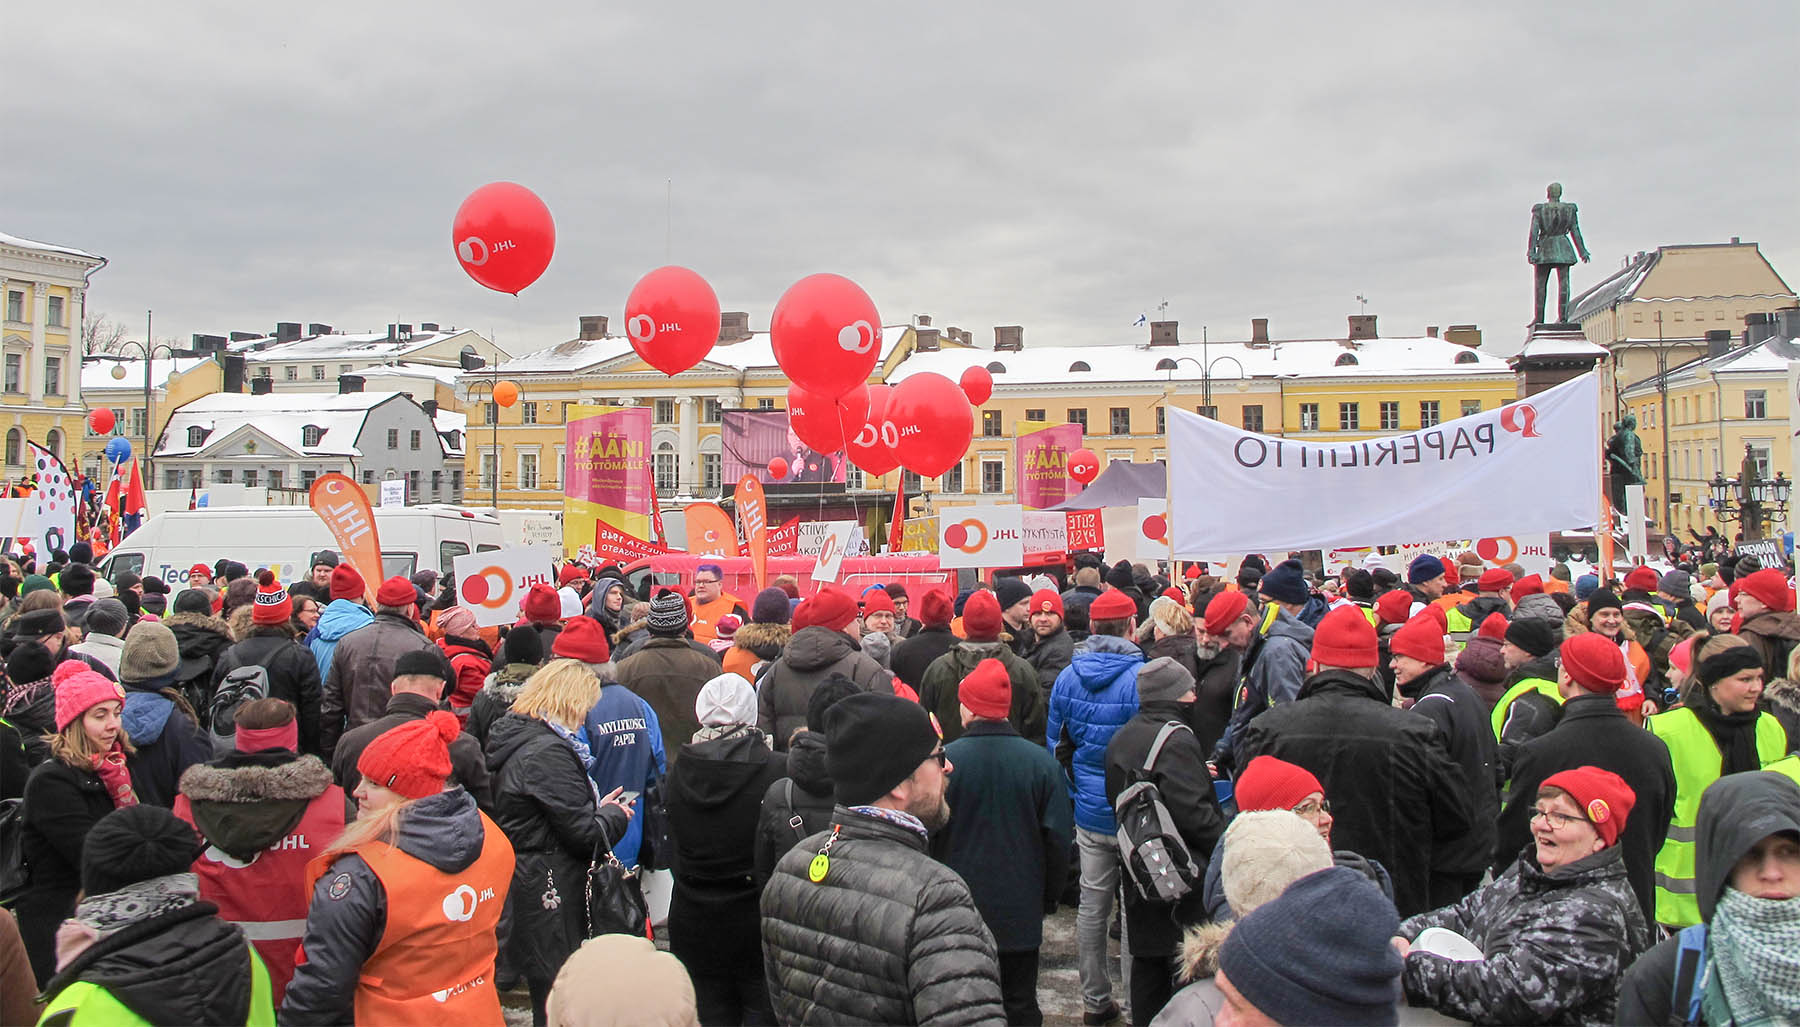 On aika täyttää tori. Vuonna 2018 paperiliittolaiset olivat paikalla punaisissa pipoissaan. Lähde mukaan torstaina 1. helmikuuta kello 12–14 Helsingin Senaatintorille.